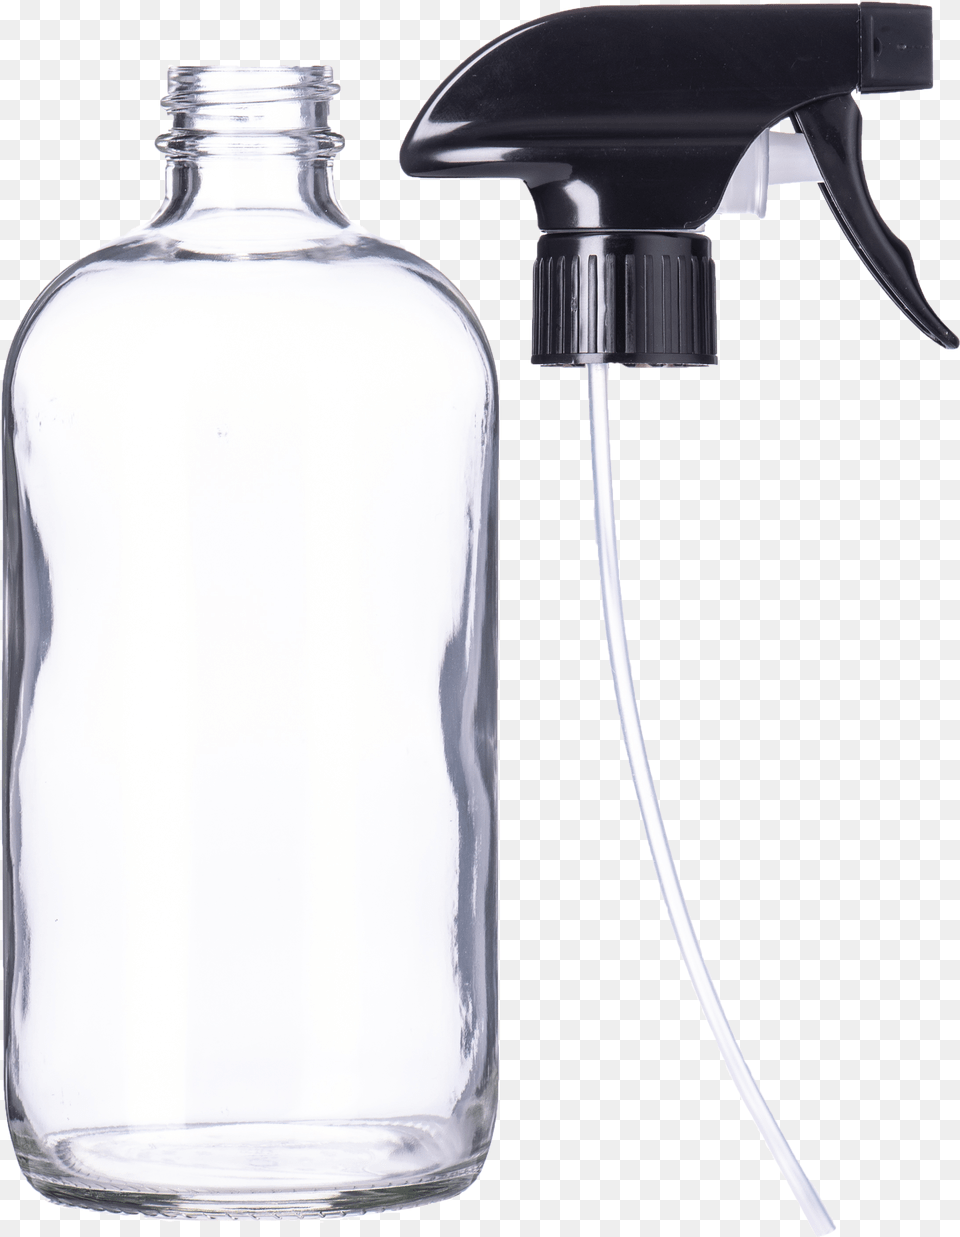 Glass Spray Bottle 16 Oz Wholesale, Beverage, Milk, Jar Png Image